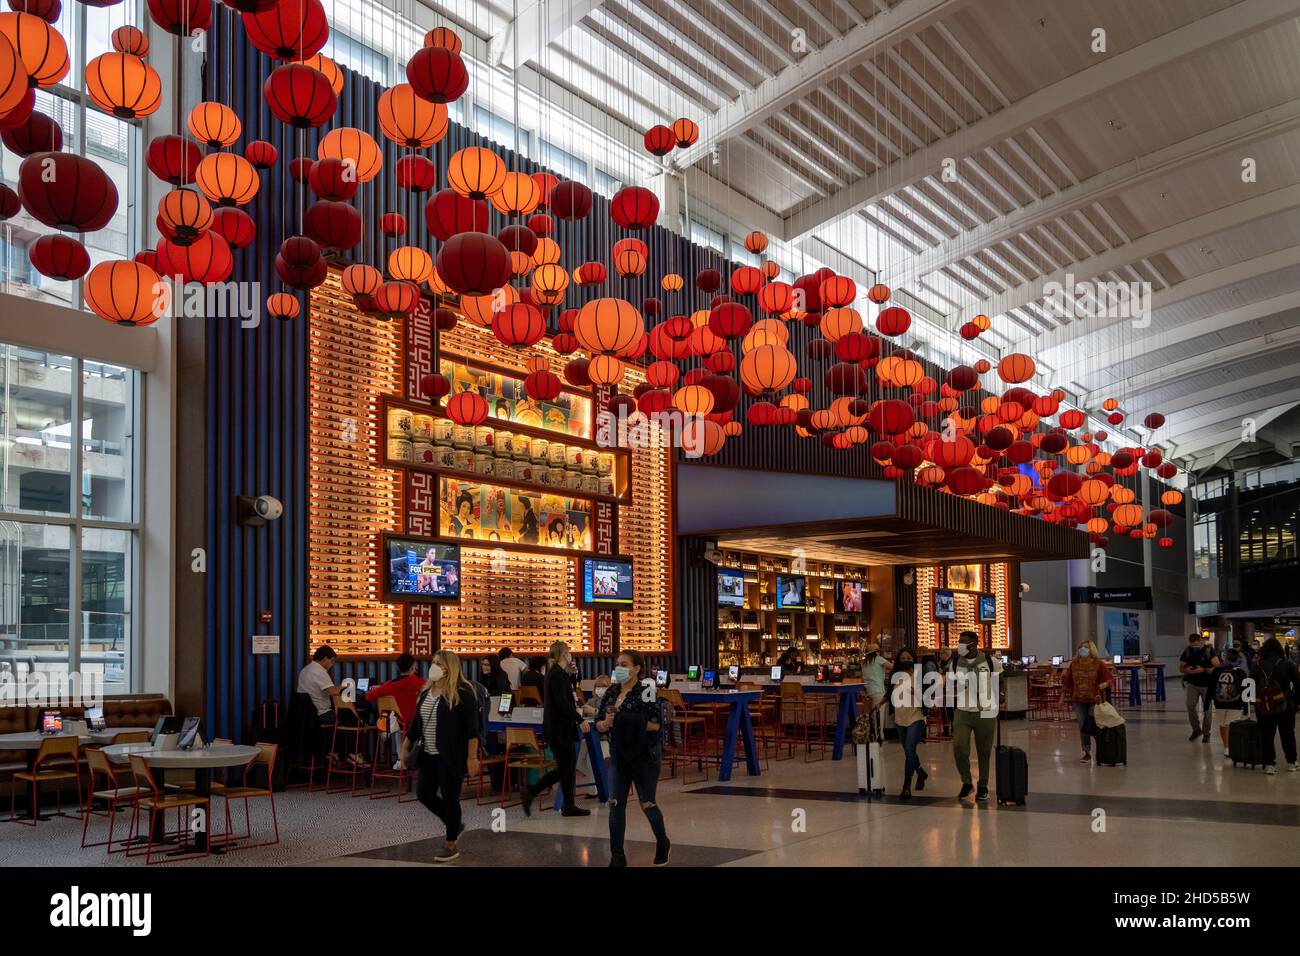 Les lanternes rouges décorent un restaurant japonais à l'intérieur du terminal.Aéroport international George Bush.Houston, Texas, États-Unis. Banque D'Images